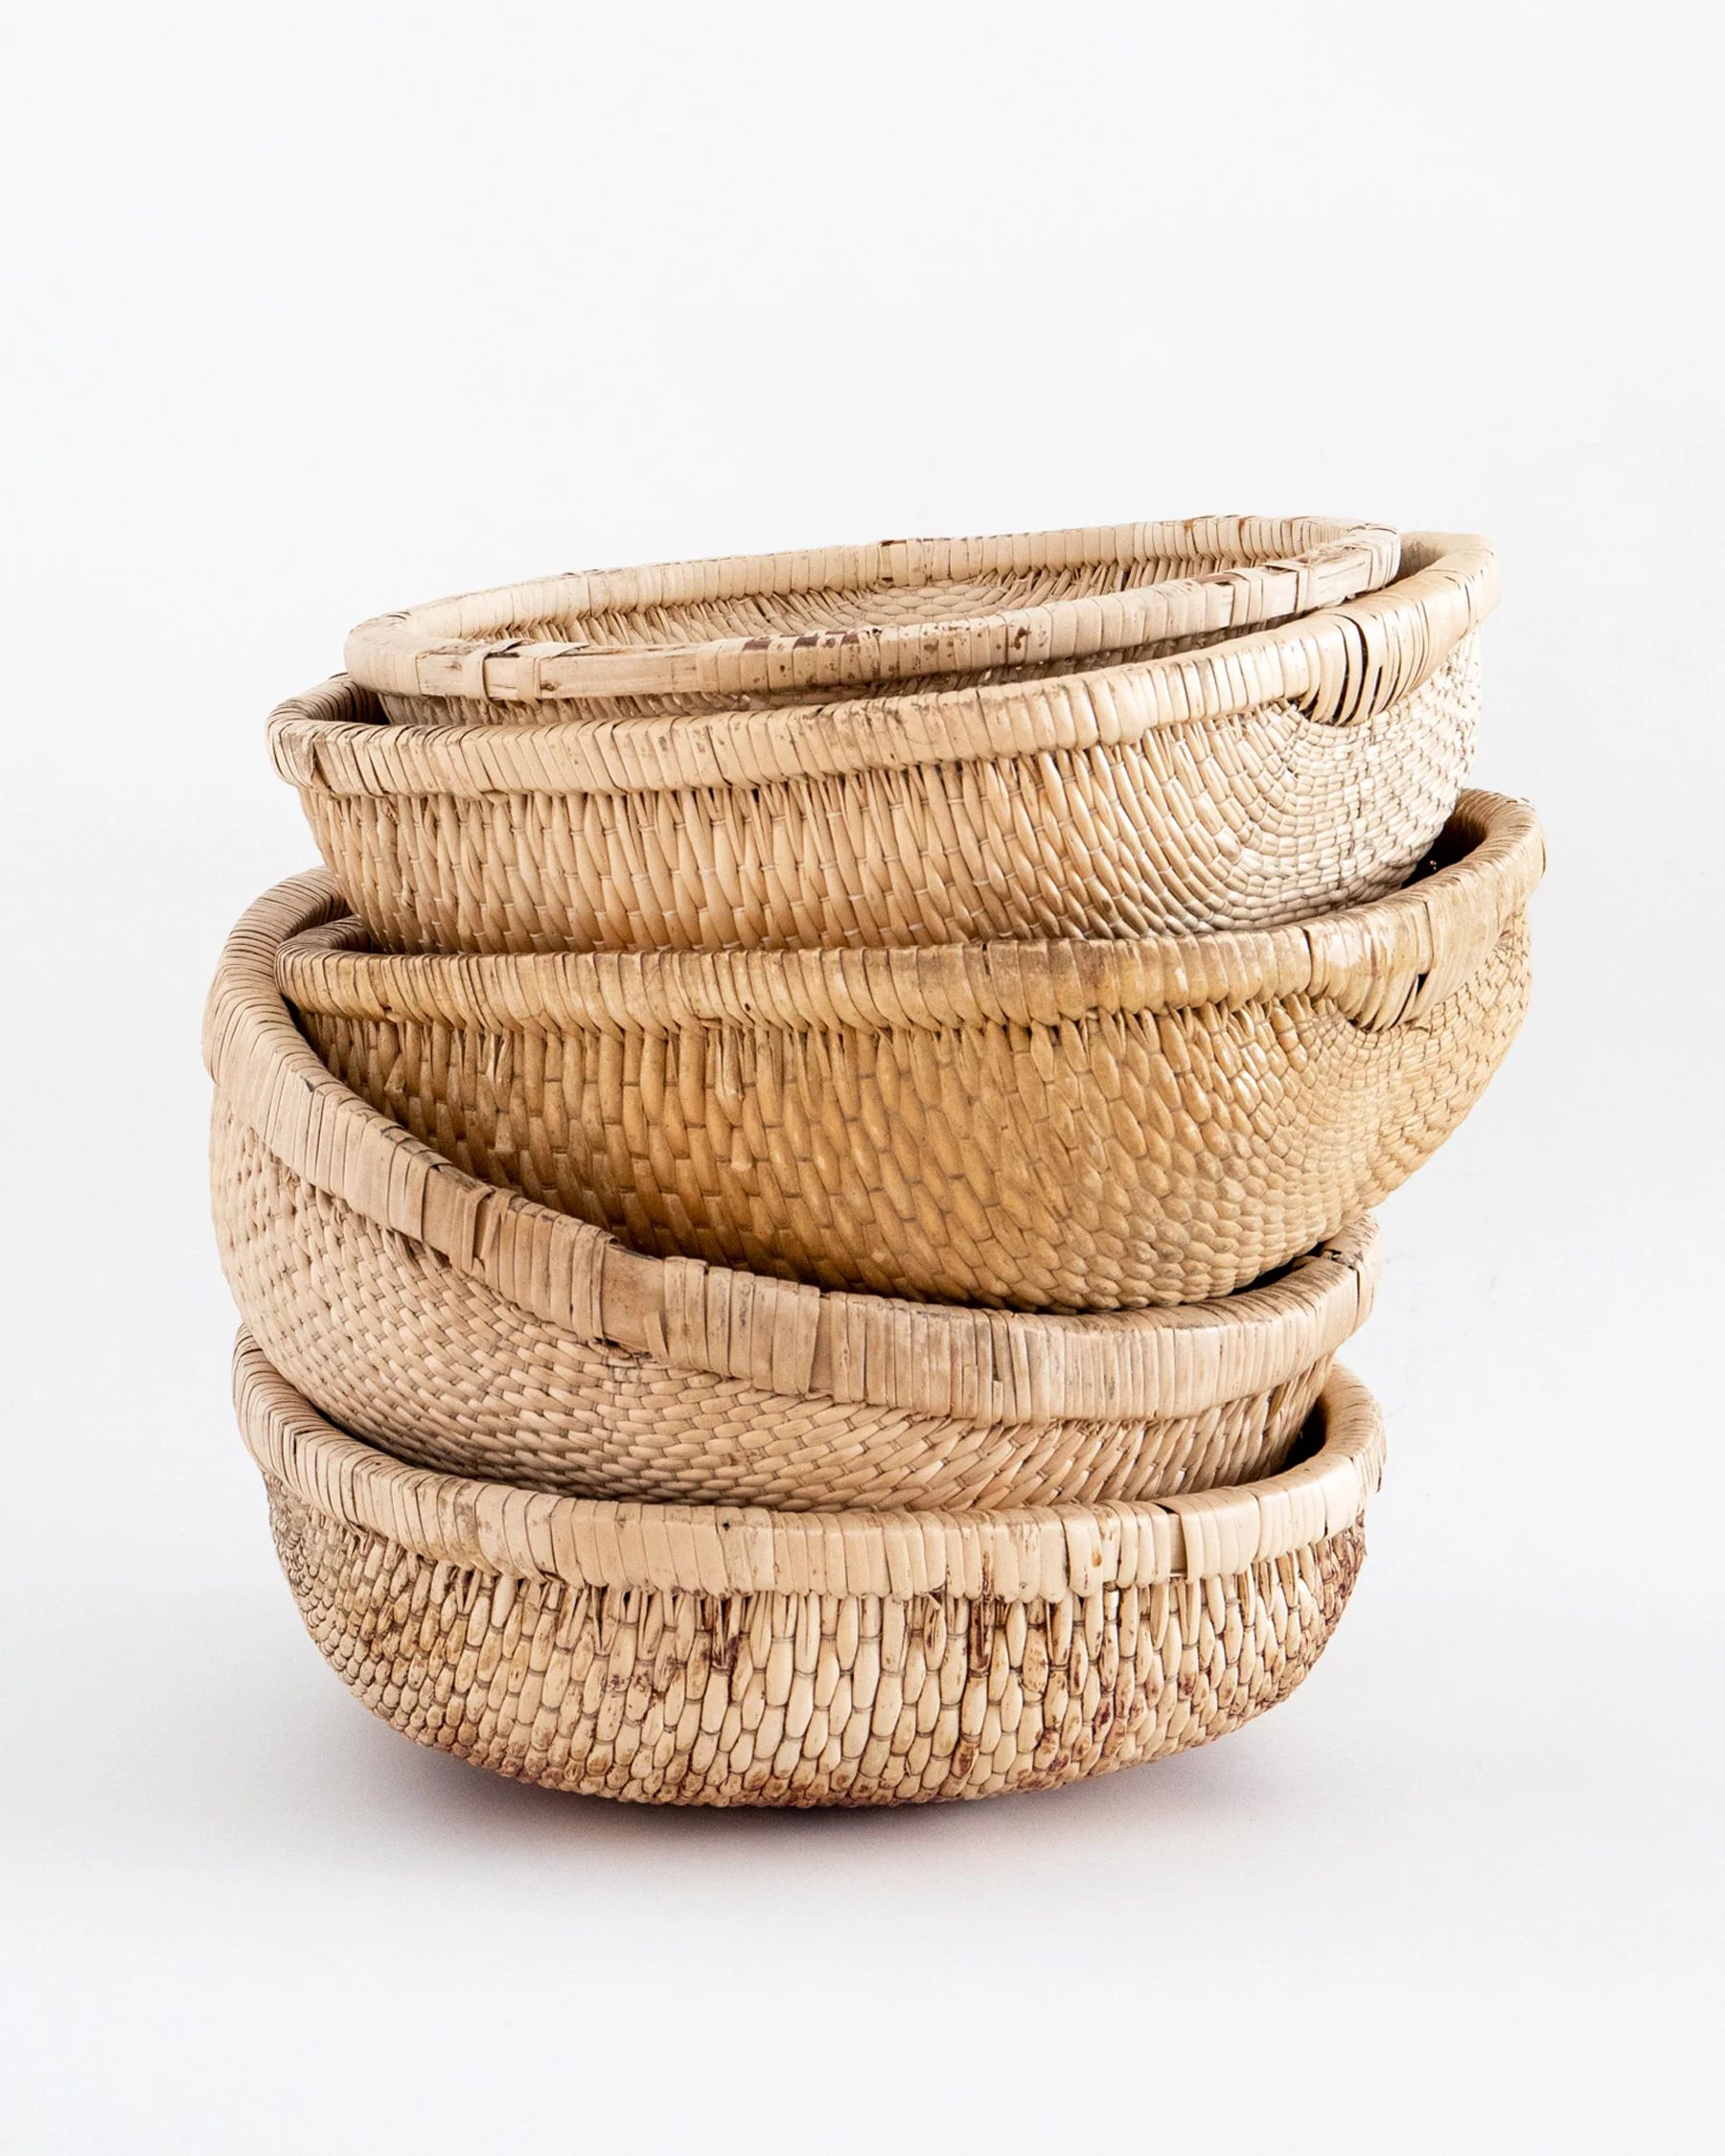 Primitive Woven Field Basket | The Vintage Rug Shop